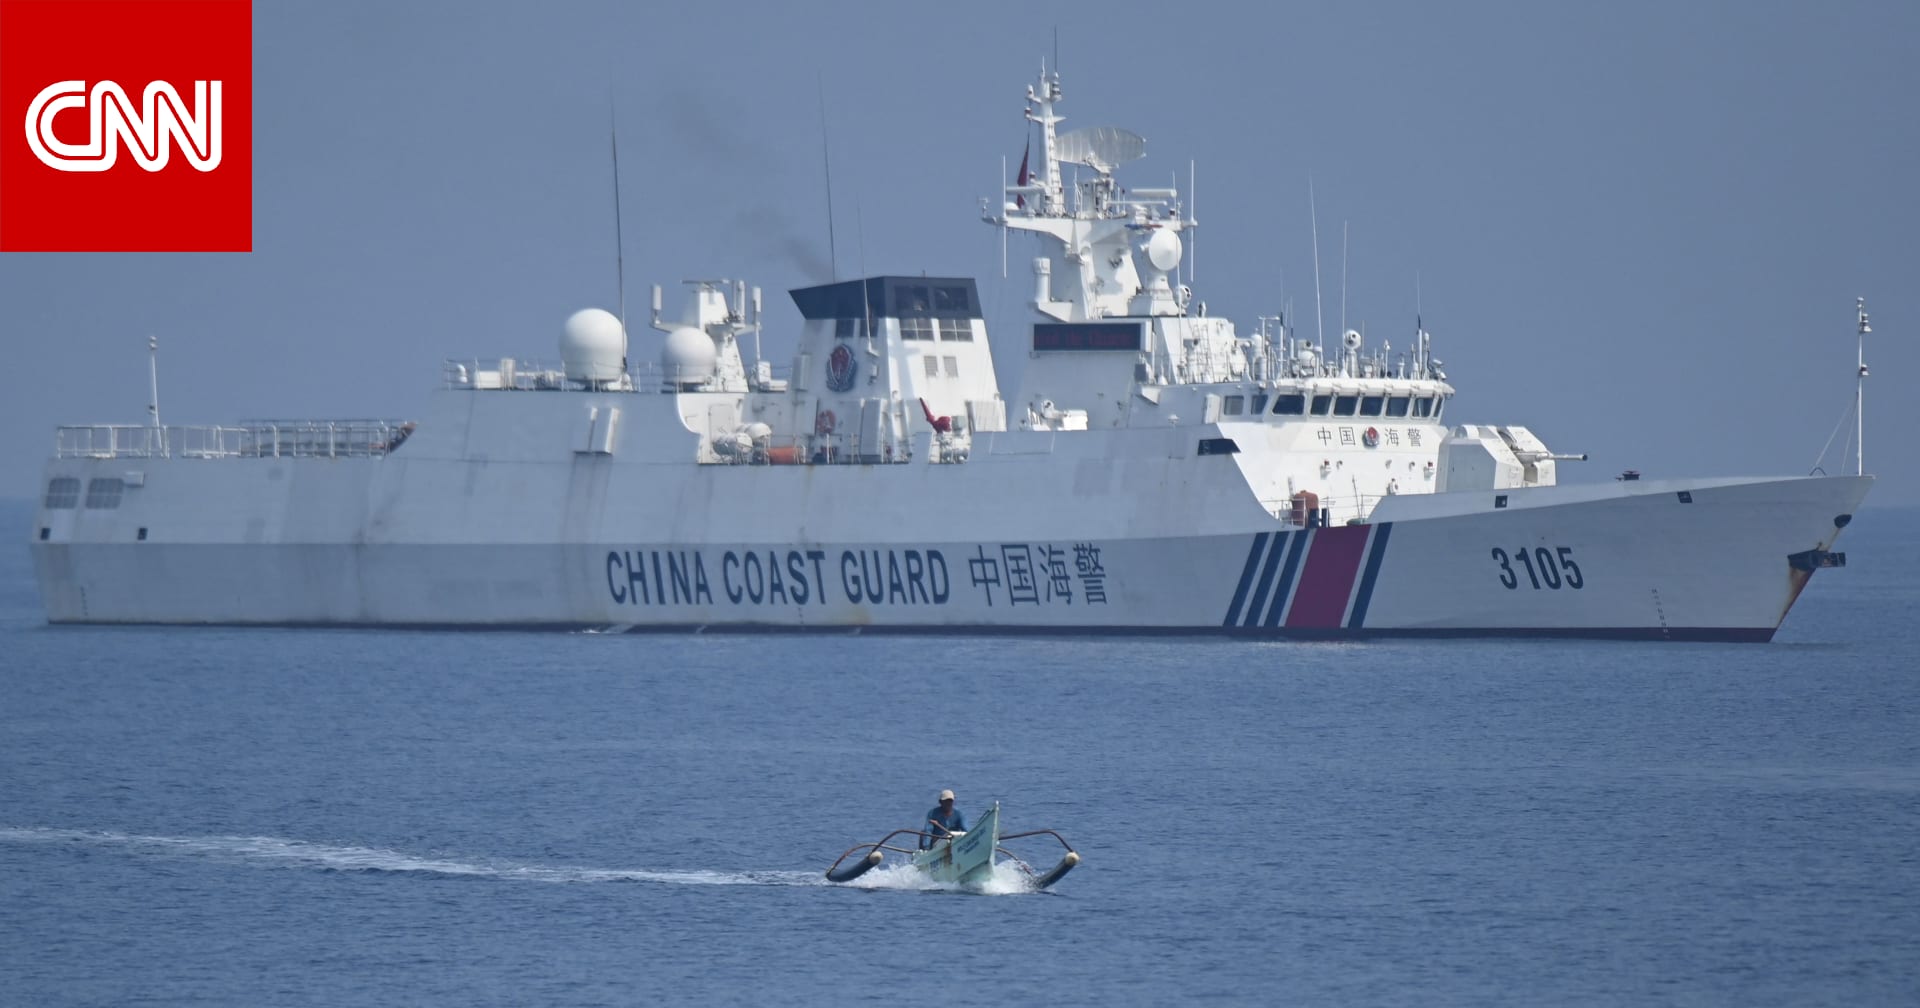 تحليل: هل تصرفات بكين في بحر الصين الجنوبي نذير لأشياء قادمة بالنسبة لتايوان؟